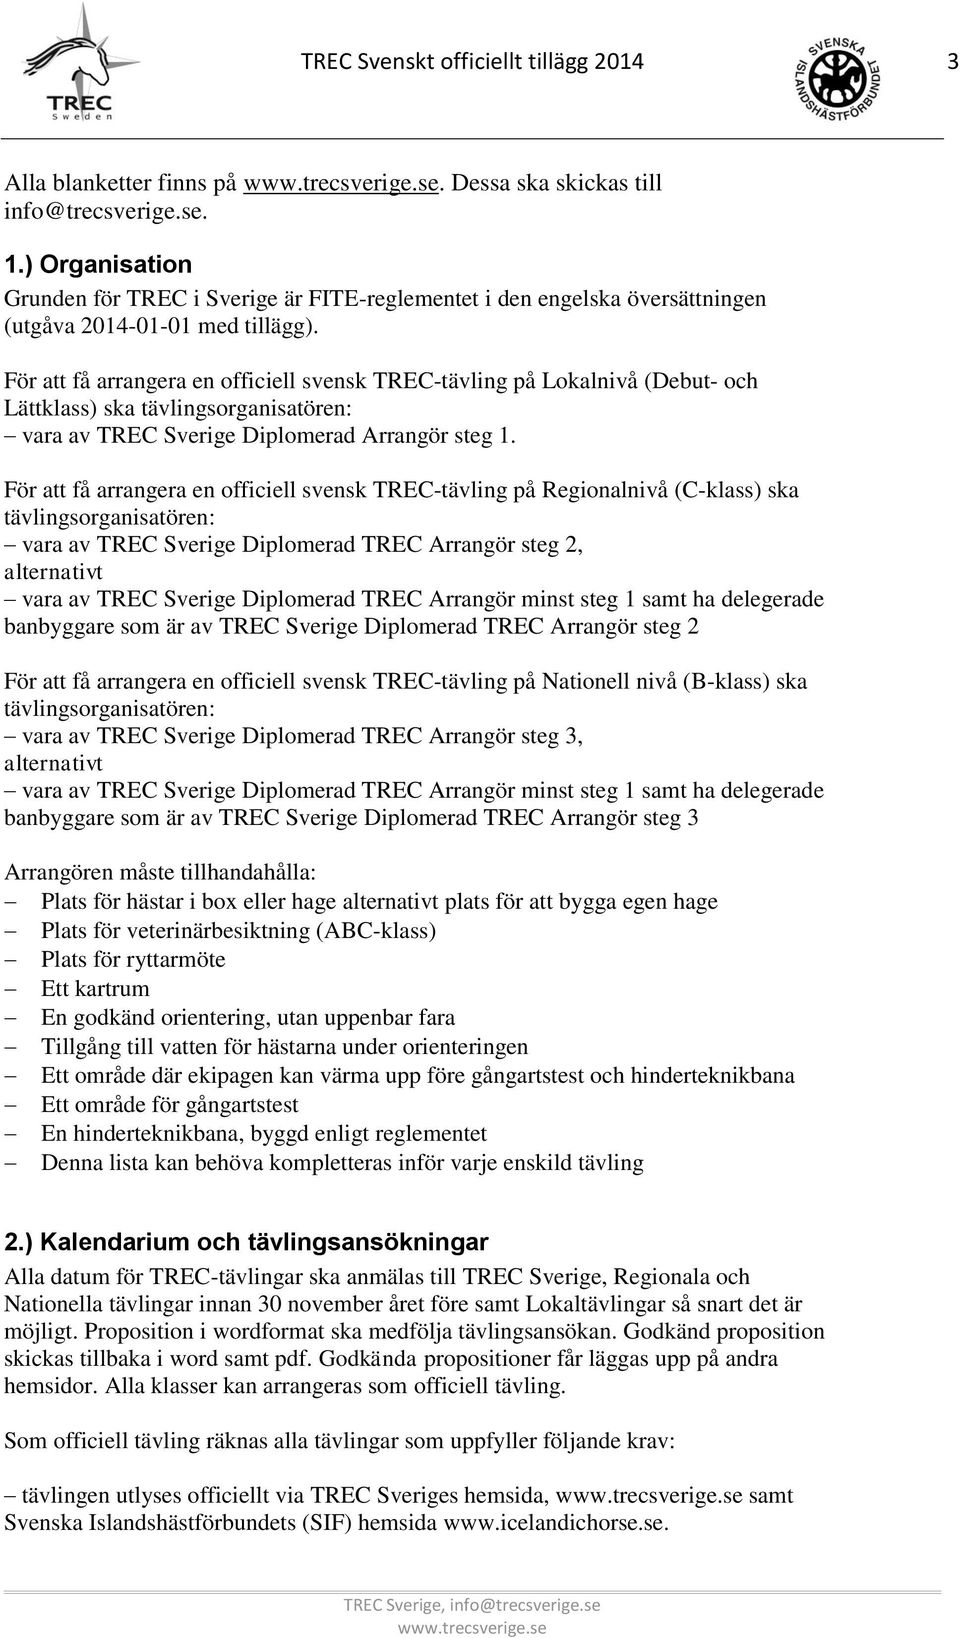 För att få arrangera en officiell svensk TREC-tävling på Lokalnivå (Debut- och Lättklass) ska tävlingsorganisatören: vara av TREC Sverige Diplomerad Arrangör steg 1.